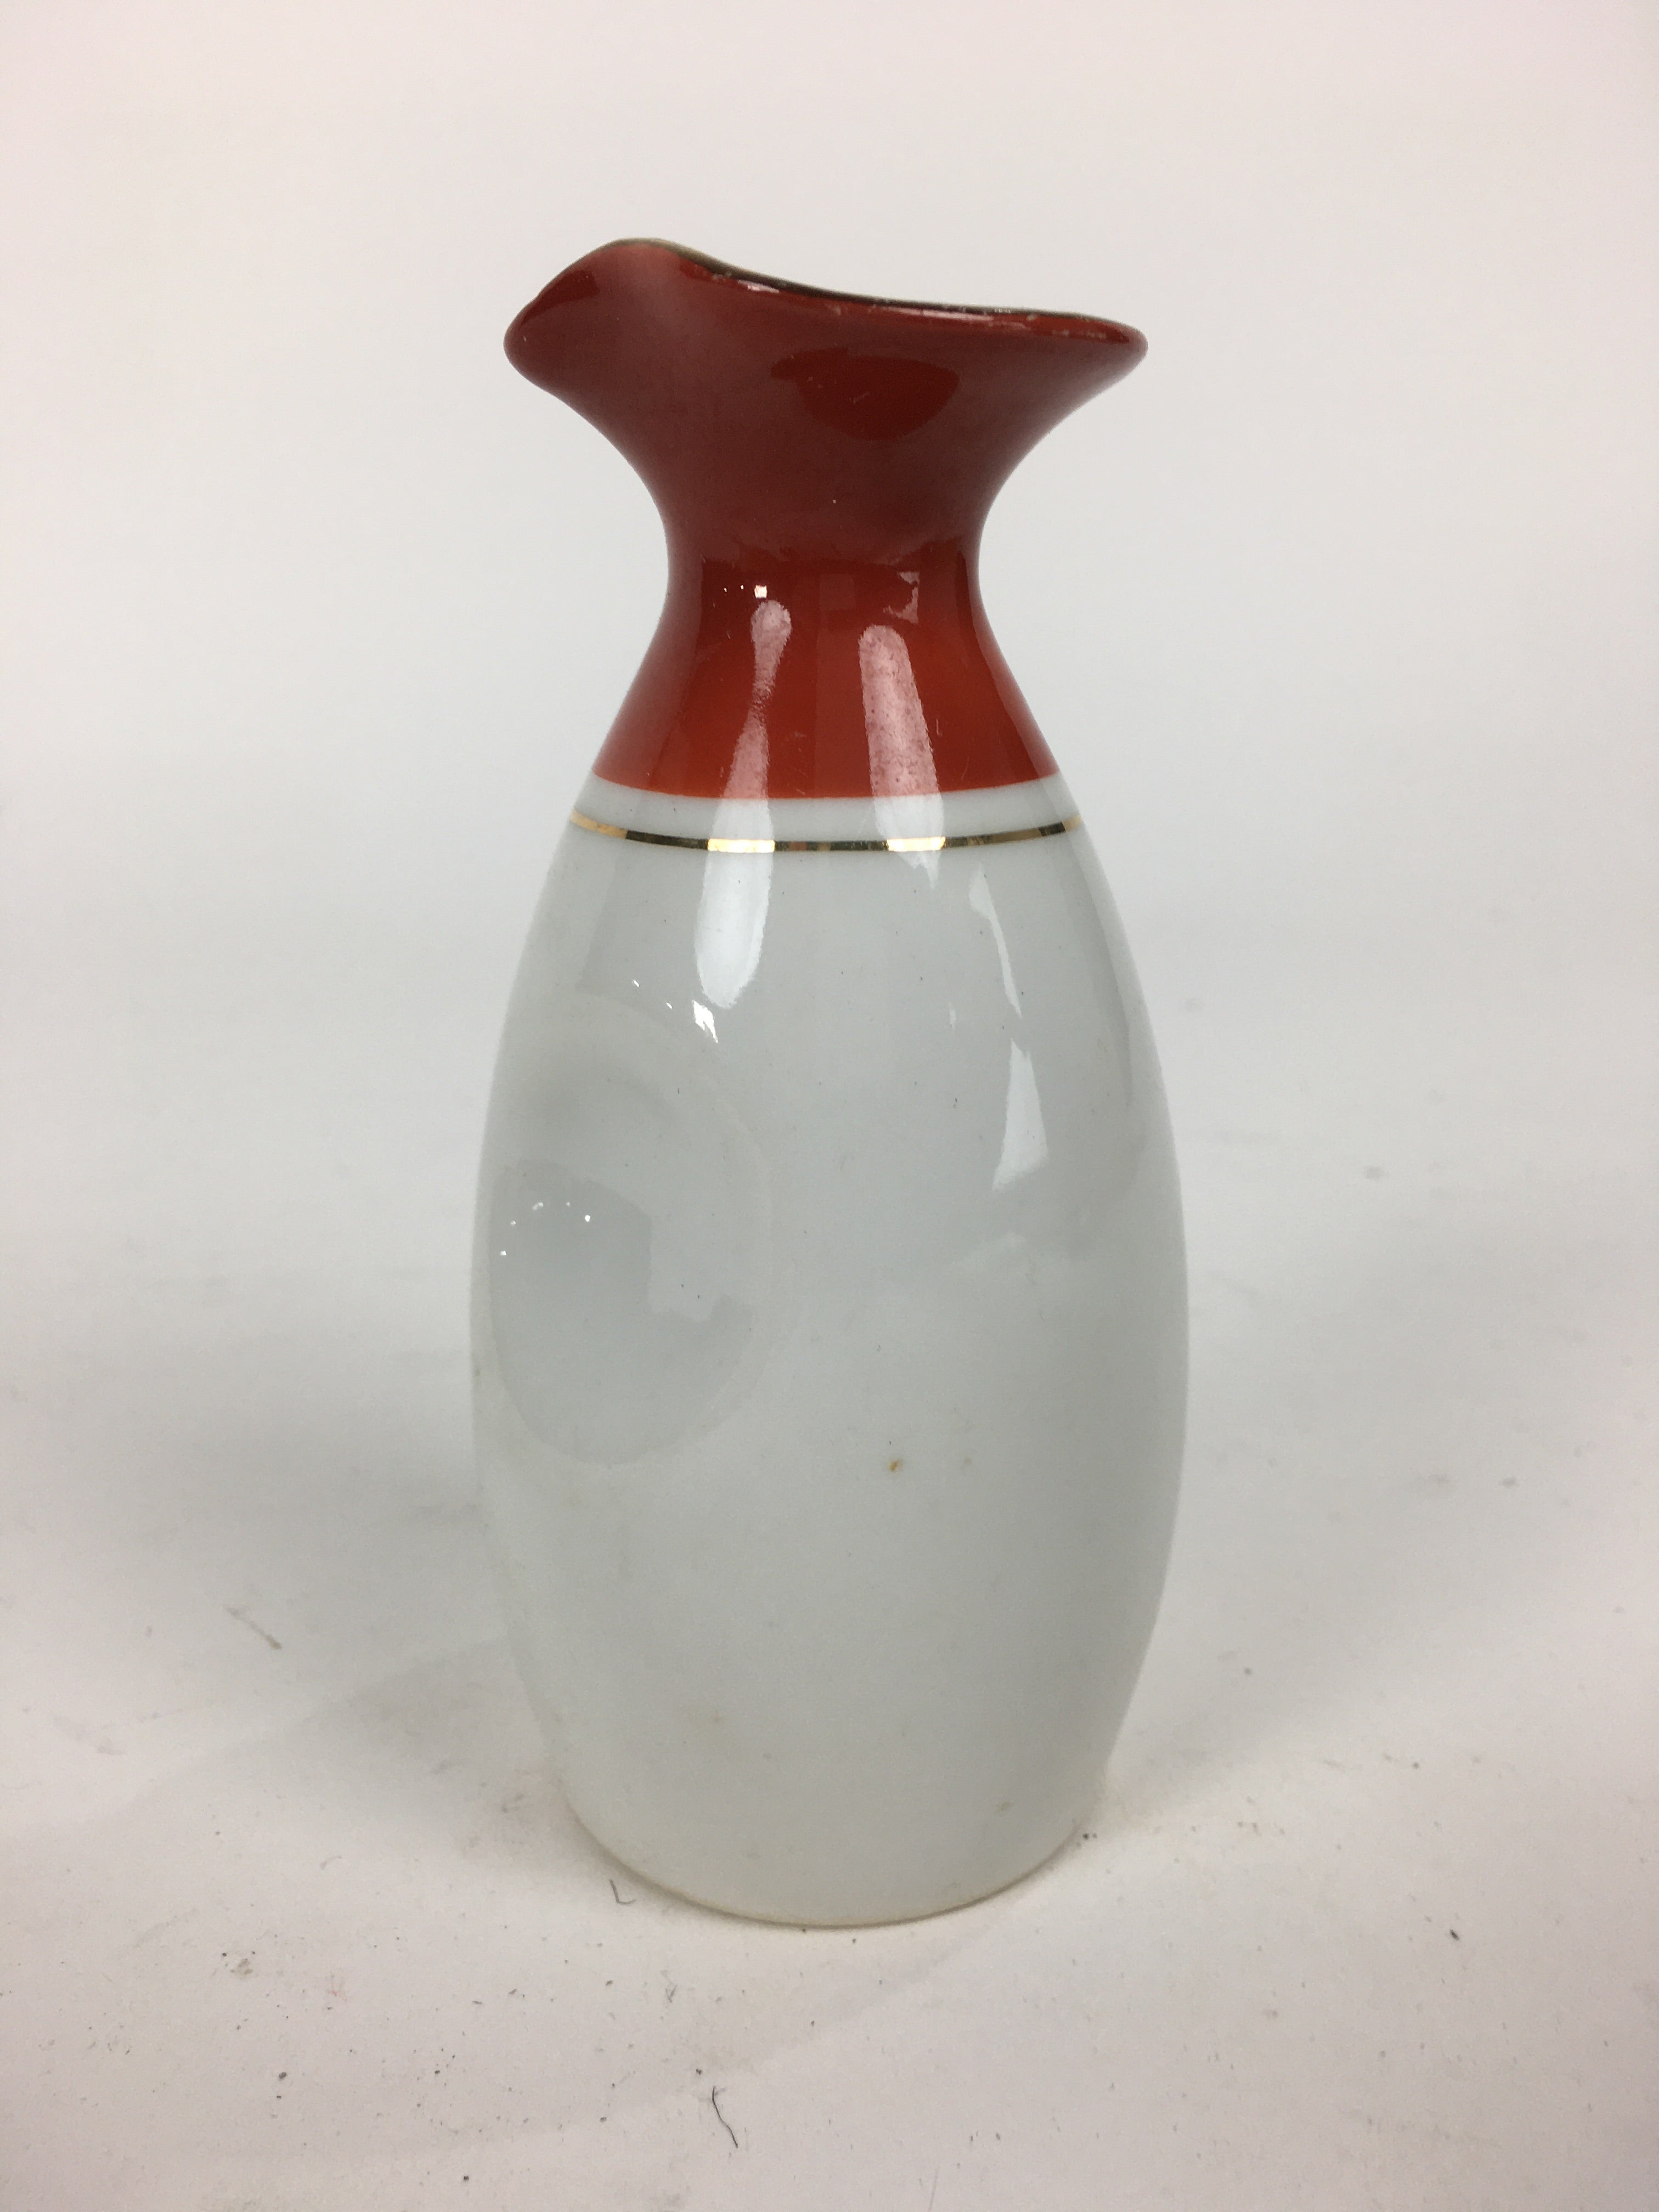 Japanese Porcelain Sake Bottle Vtg Dimple Red Spout White Tokkuri TS330